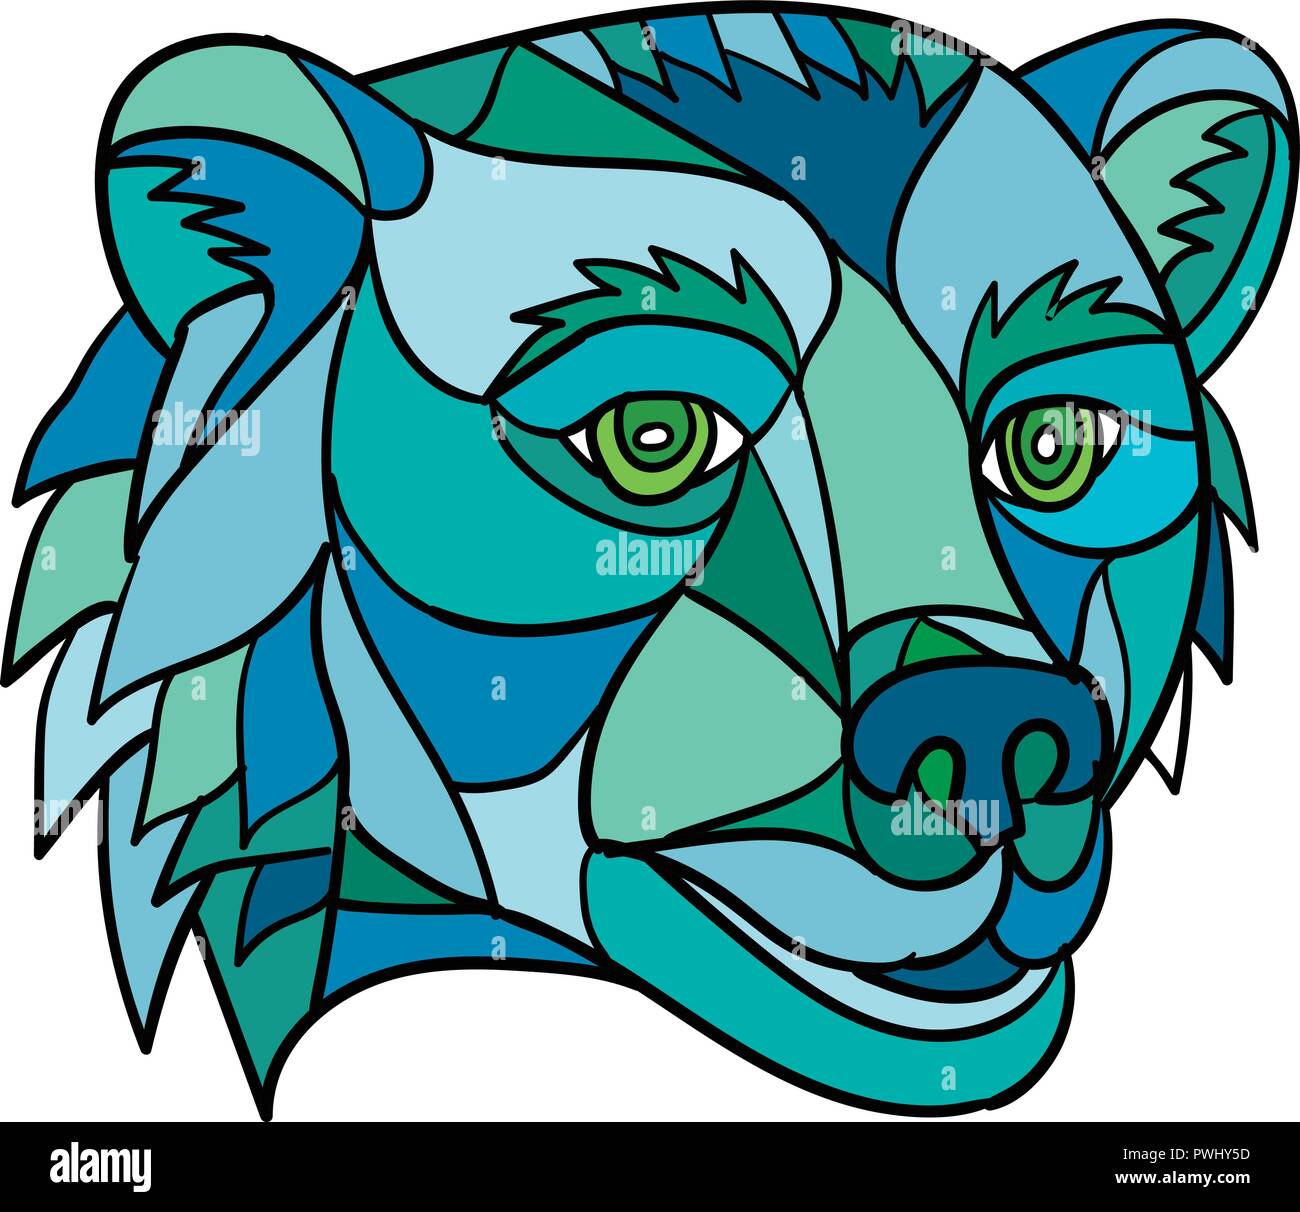 Poligono di basso in stile mosaico illustrazione di un orso grizzly o orso bruno in testa su sfondo isolato. Illustrazione Vettoriale